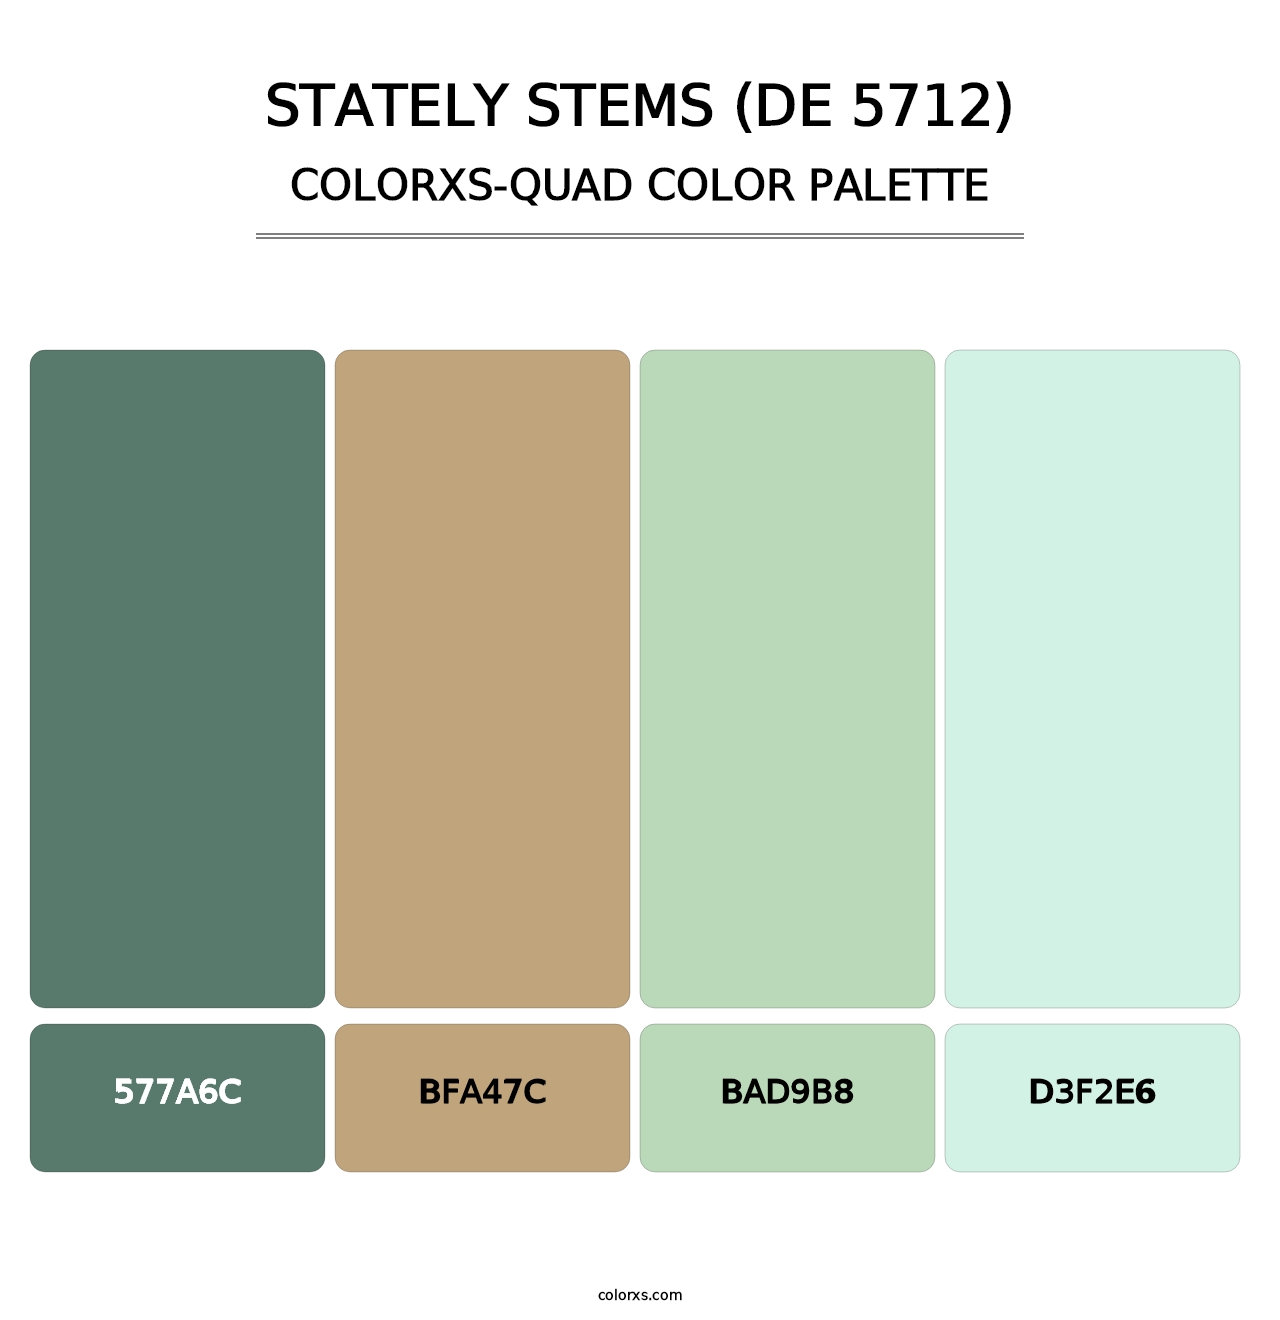 Stately Stems (DE 5712) - Colorxs Quad Palette